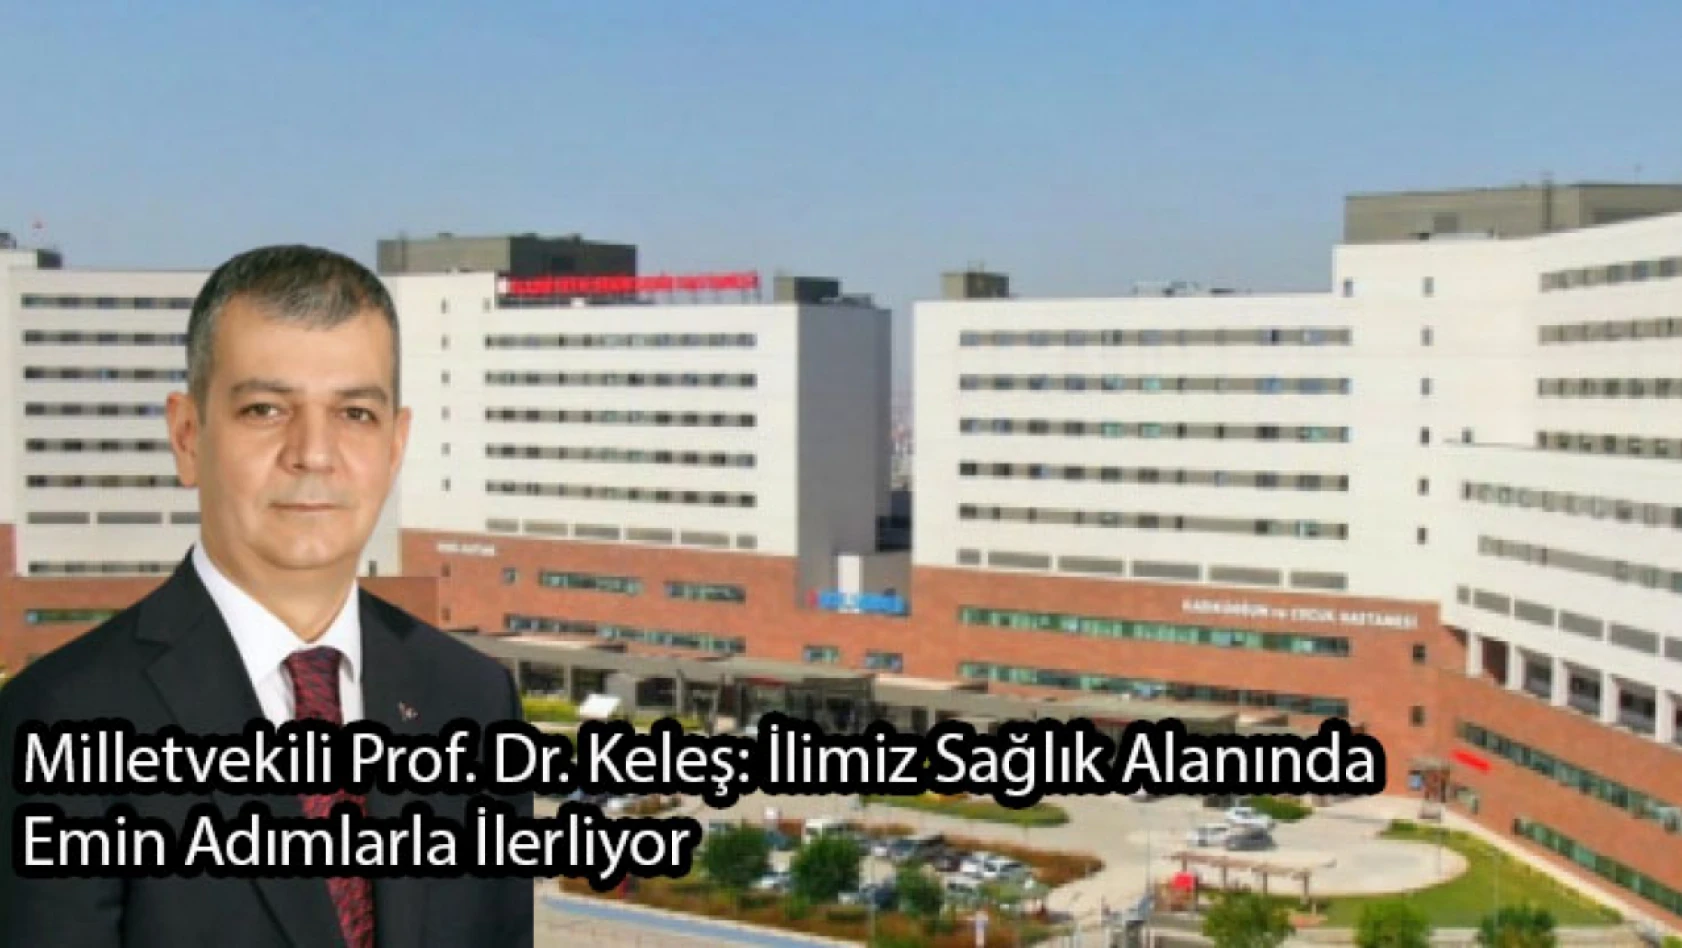 Milletvekili Prof. Dr. Keleş: İlimiz Sağlık Alanında Emin Adımlarla İlerliyor